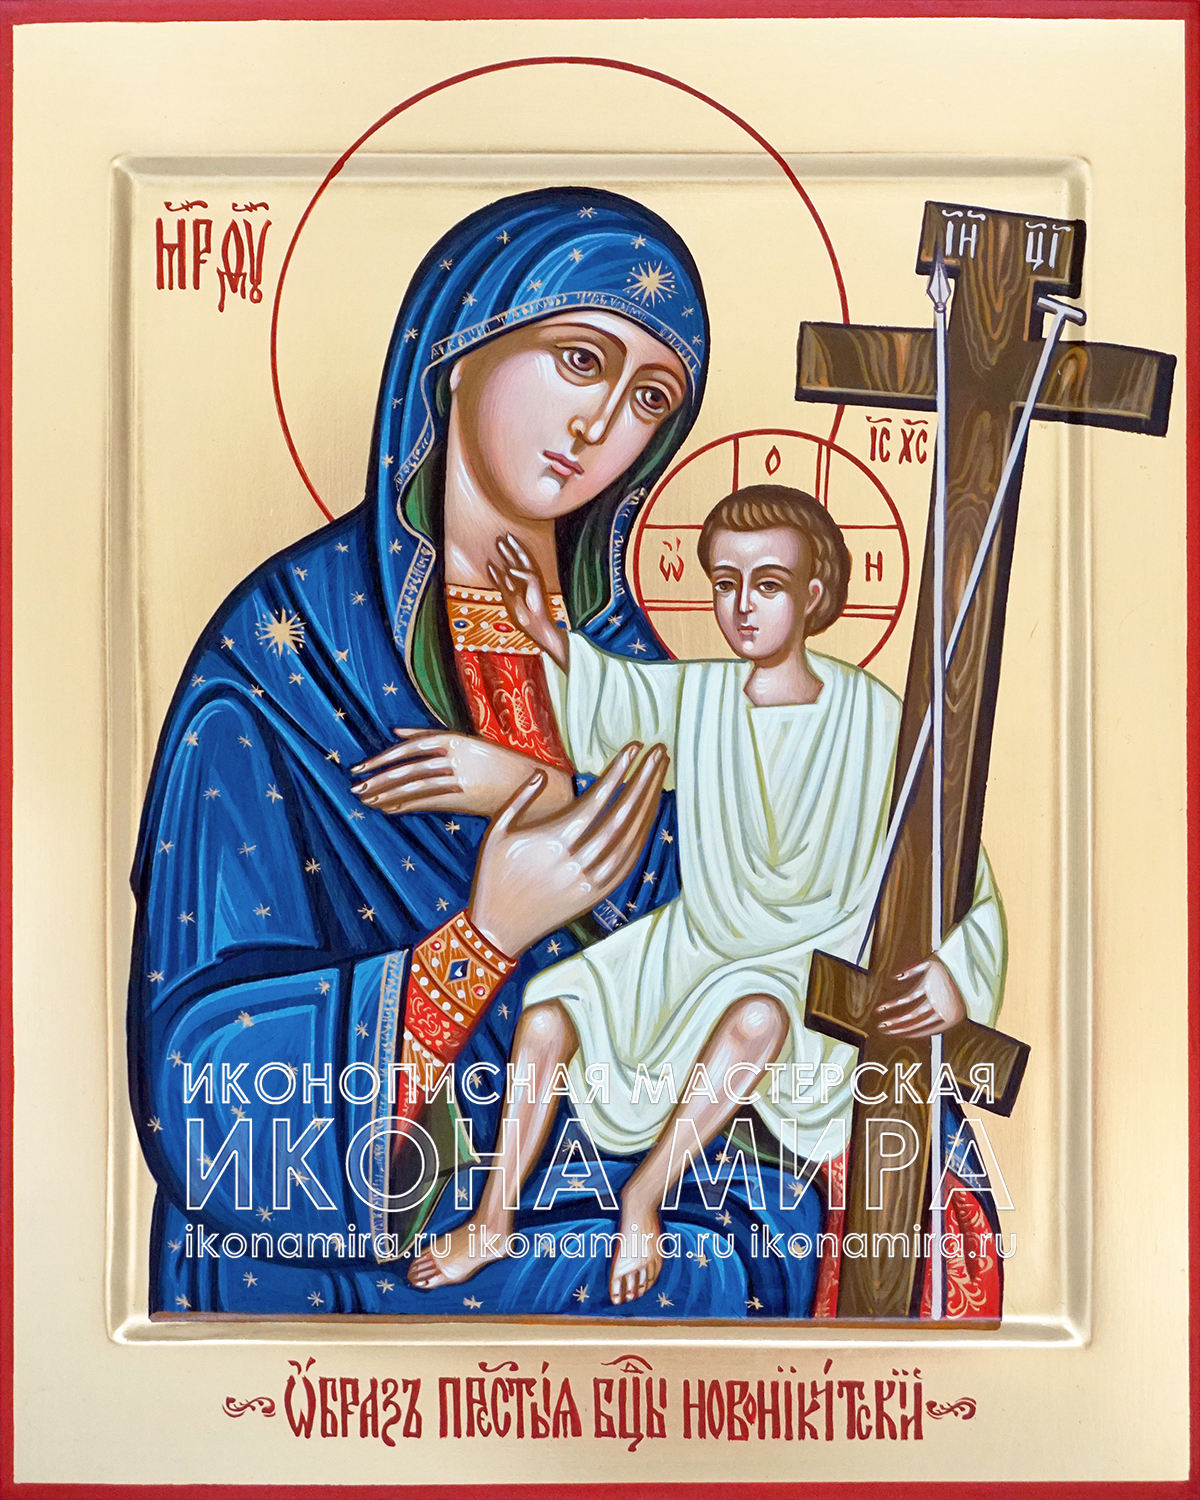 Купить икону Божией Матери Новоникитская в Москве недорого